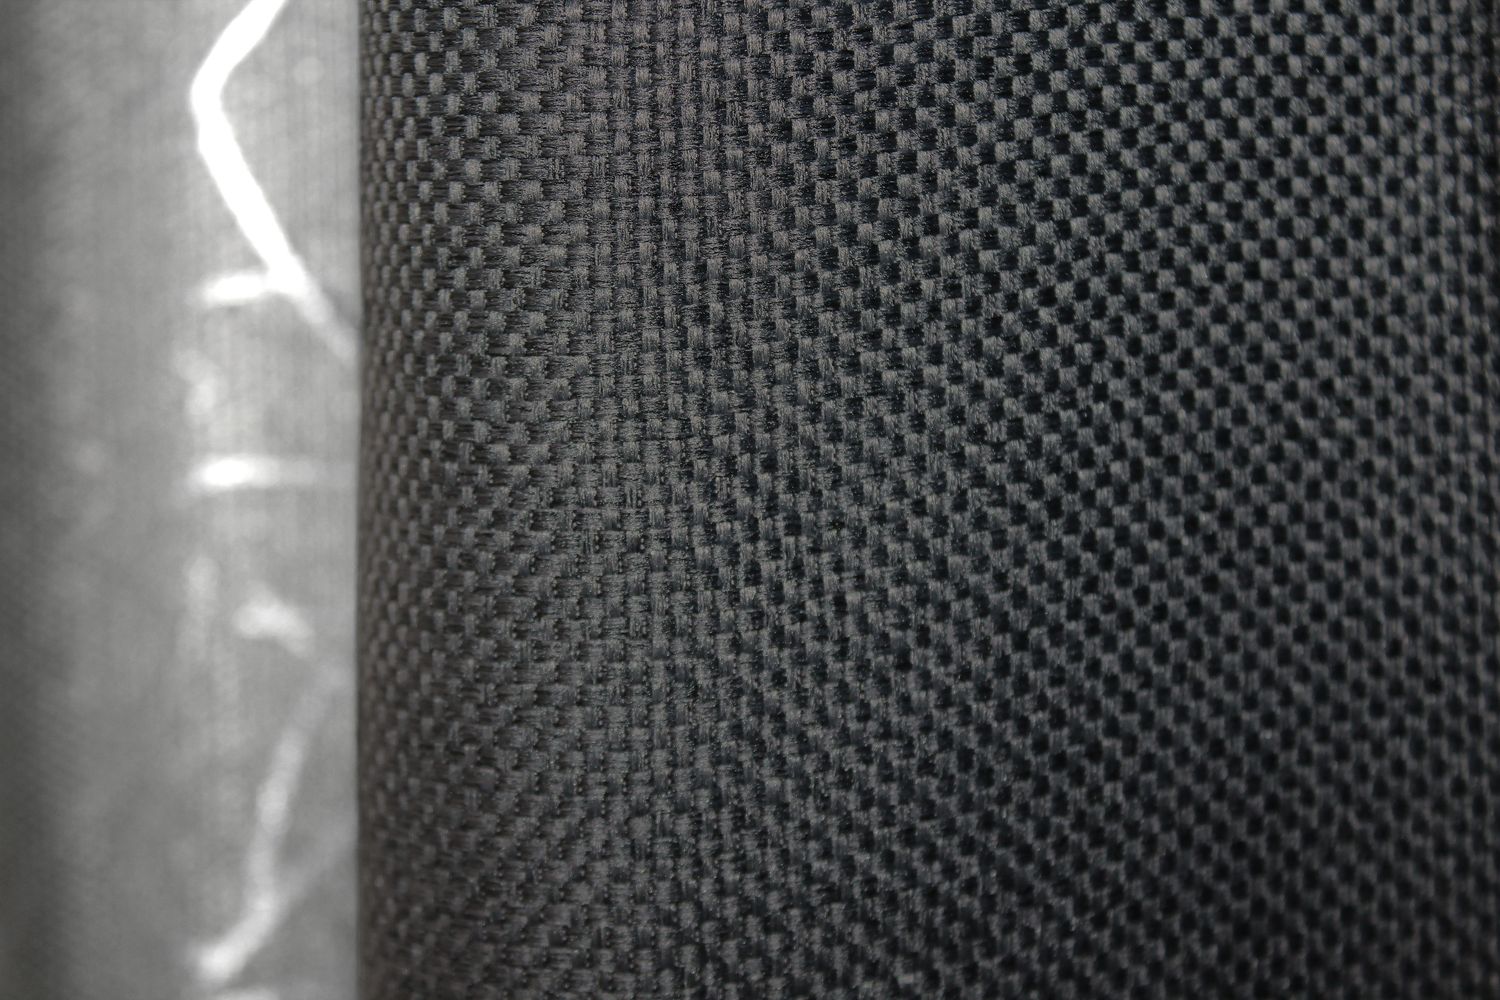 Комбинированные шторы из ткани лен цвет темно-серый с серым 014дк (635-1221ш), Темно-серый с серым, Комплект штор (2 шт. 1,5х2,7 м.), 1,5 м., 2,7 м., 150, 270, 2 - 3 м., В комплекте 2 шт., Тесьма